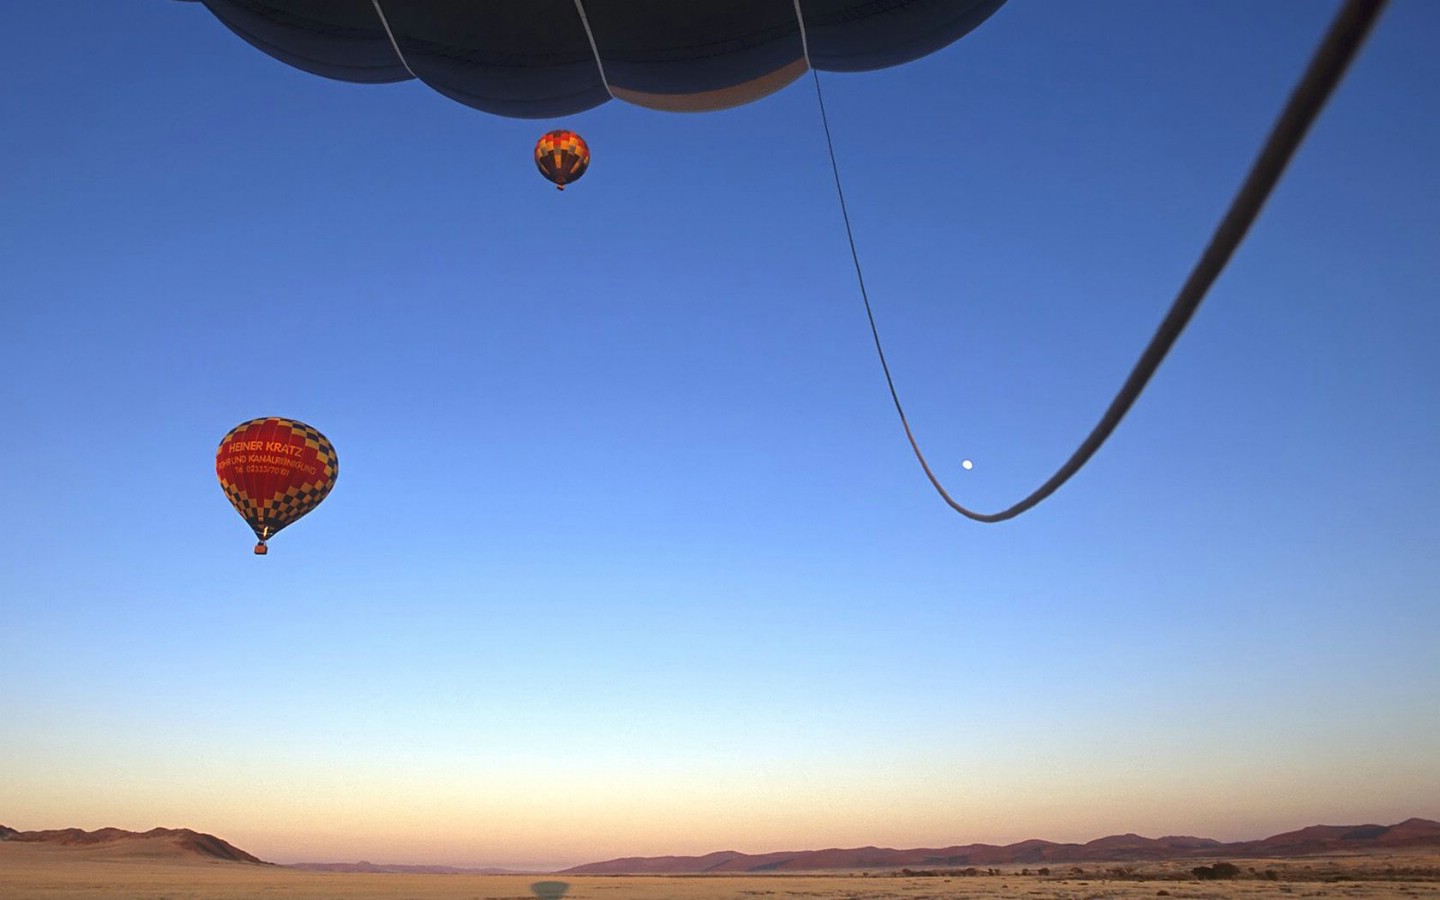 壁纸1440x900文化之旅 地理人文景观壁纸精选 第二辑 Hot Air Balloons Take Off at Sunrise Namib Desert Namibia 纳米比亚 纳米比沙漠热气球图片壁纸壁纸 文化之旅地理人文景观壁纸精选 第二辑壁纸 文化之旅地理人文景观壁纸精选 第二辑图片 文化之旅地理人文景观壁纸精选 第二辑素材 人文壁纸 人文图库 人文图片素材桌面壁纸